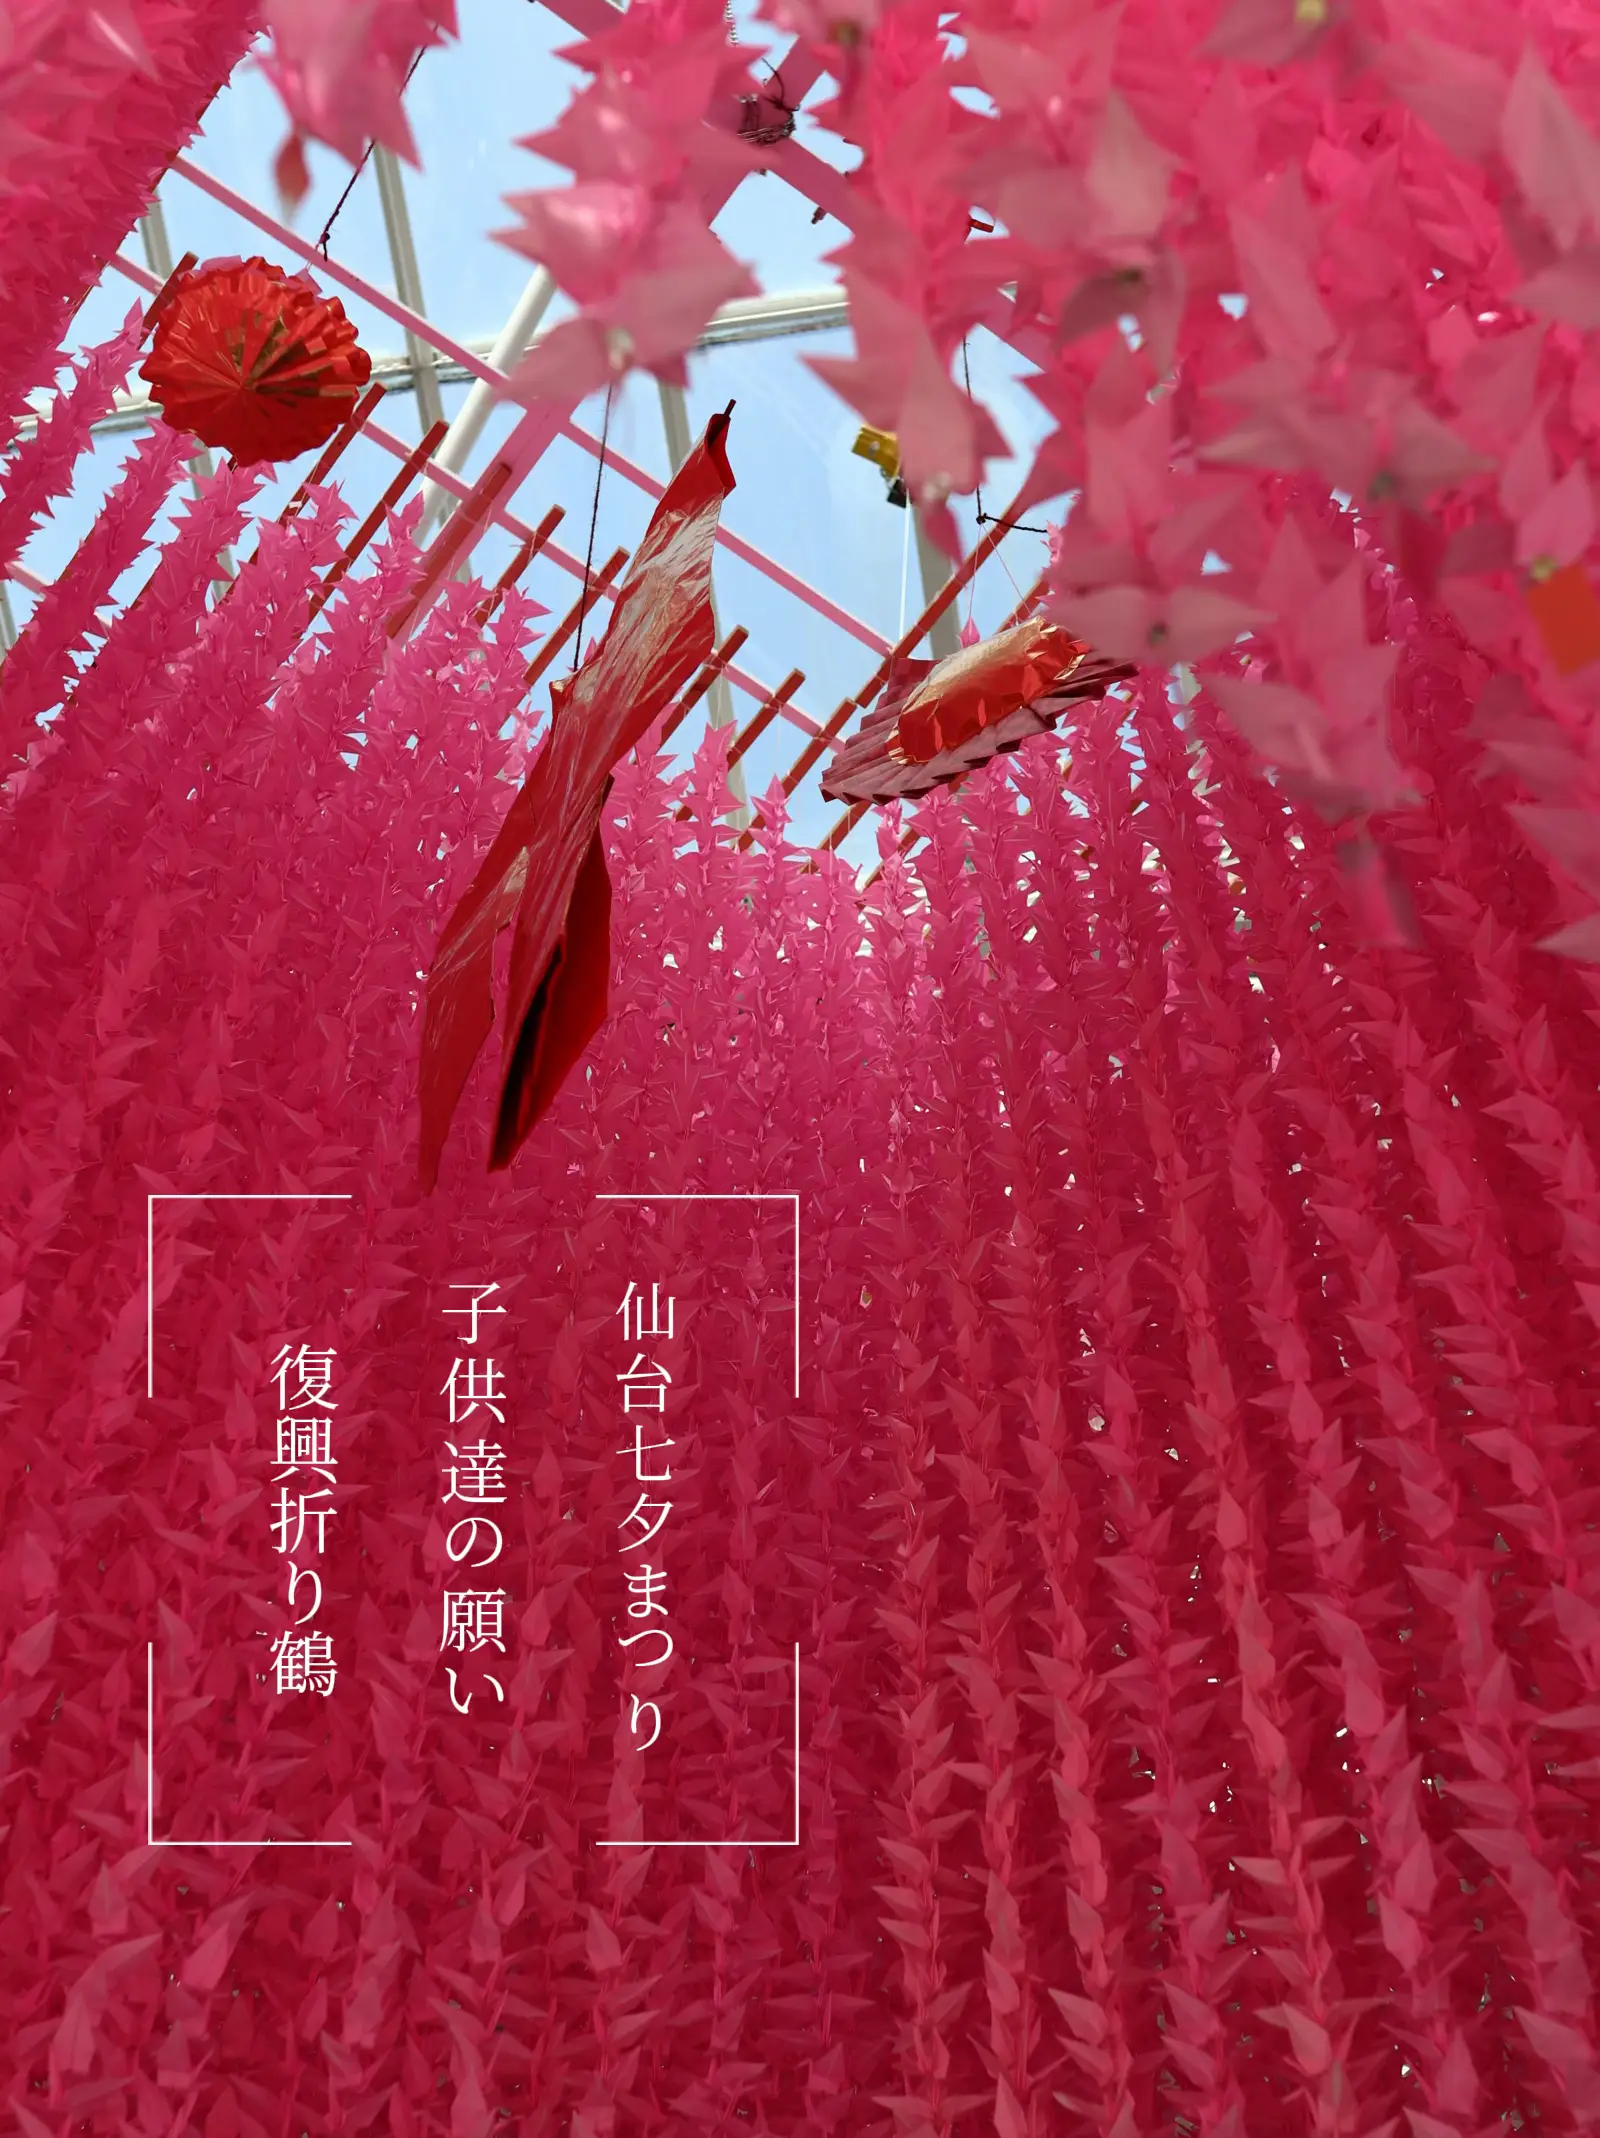 東北 仙台 夏の風物詩 78000羽の折鶴の祈り✨ | bacosanが投稿した